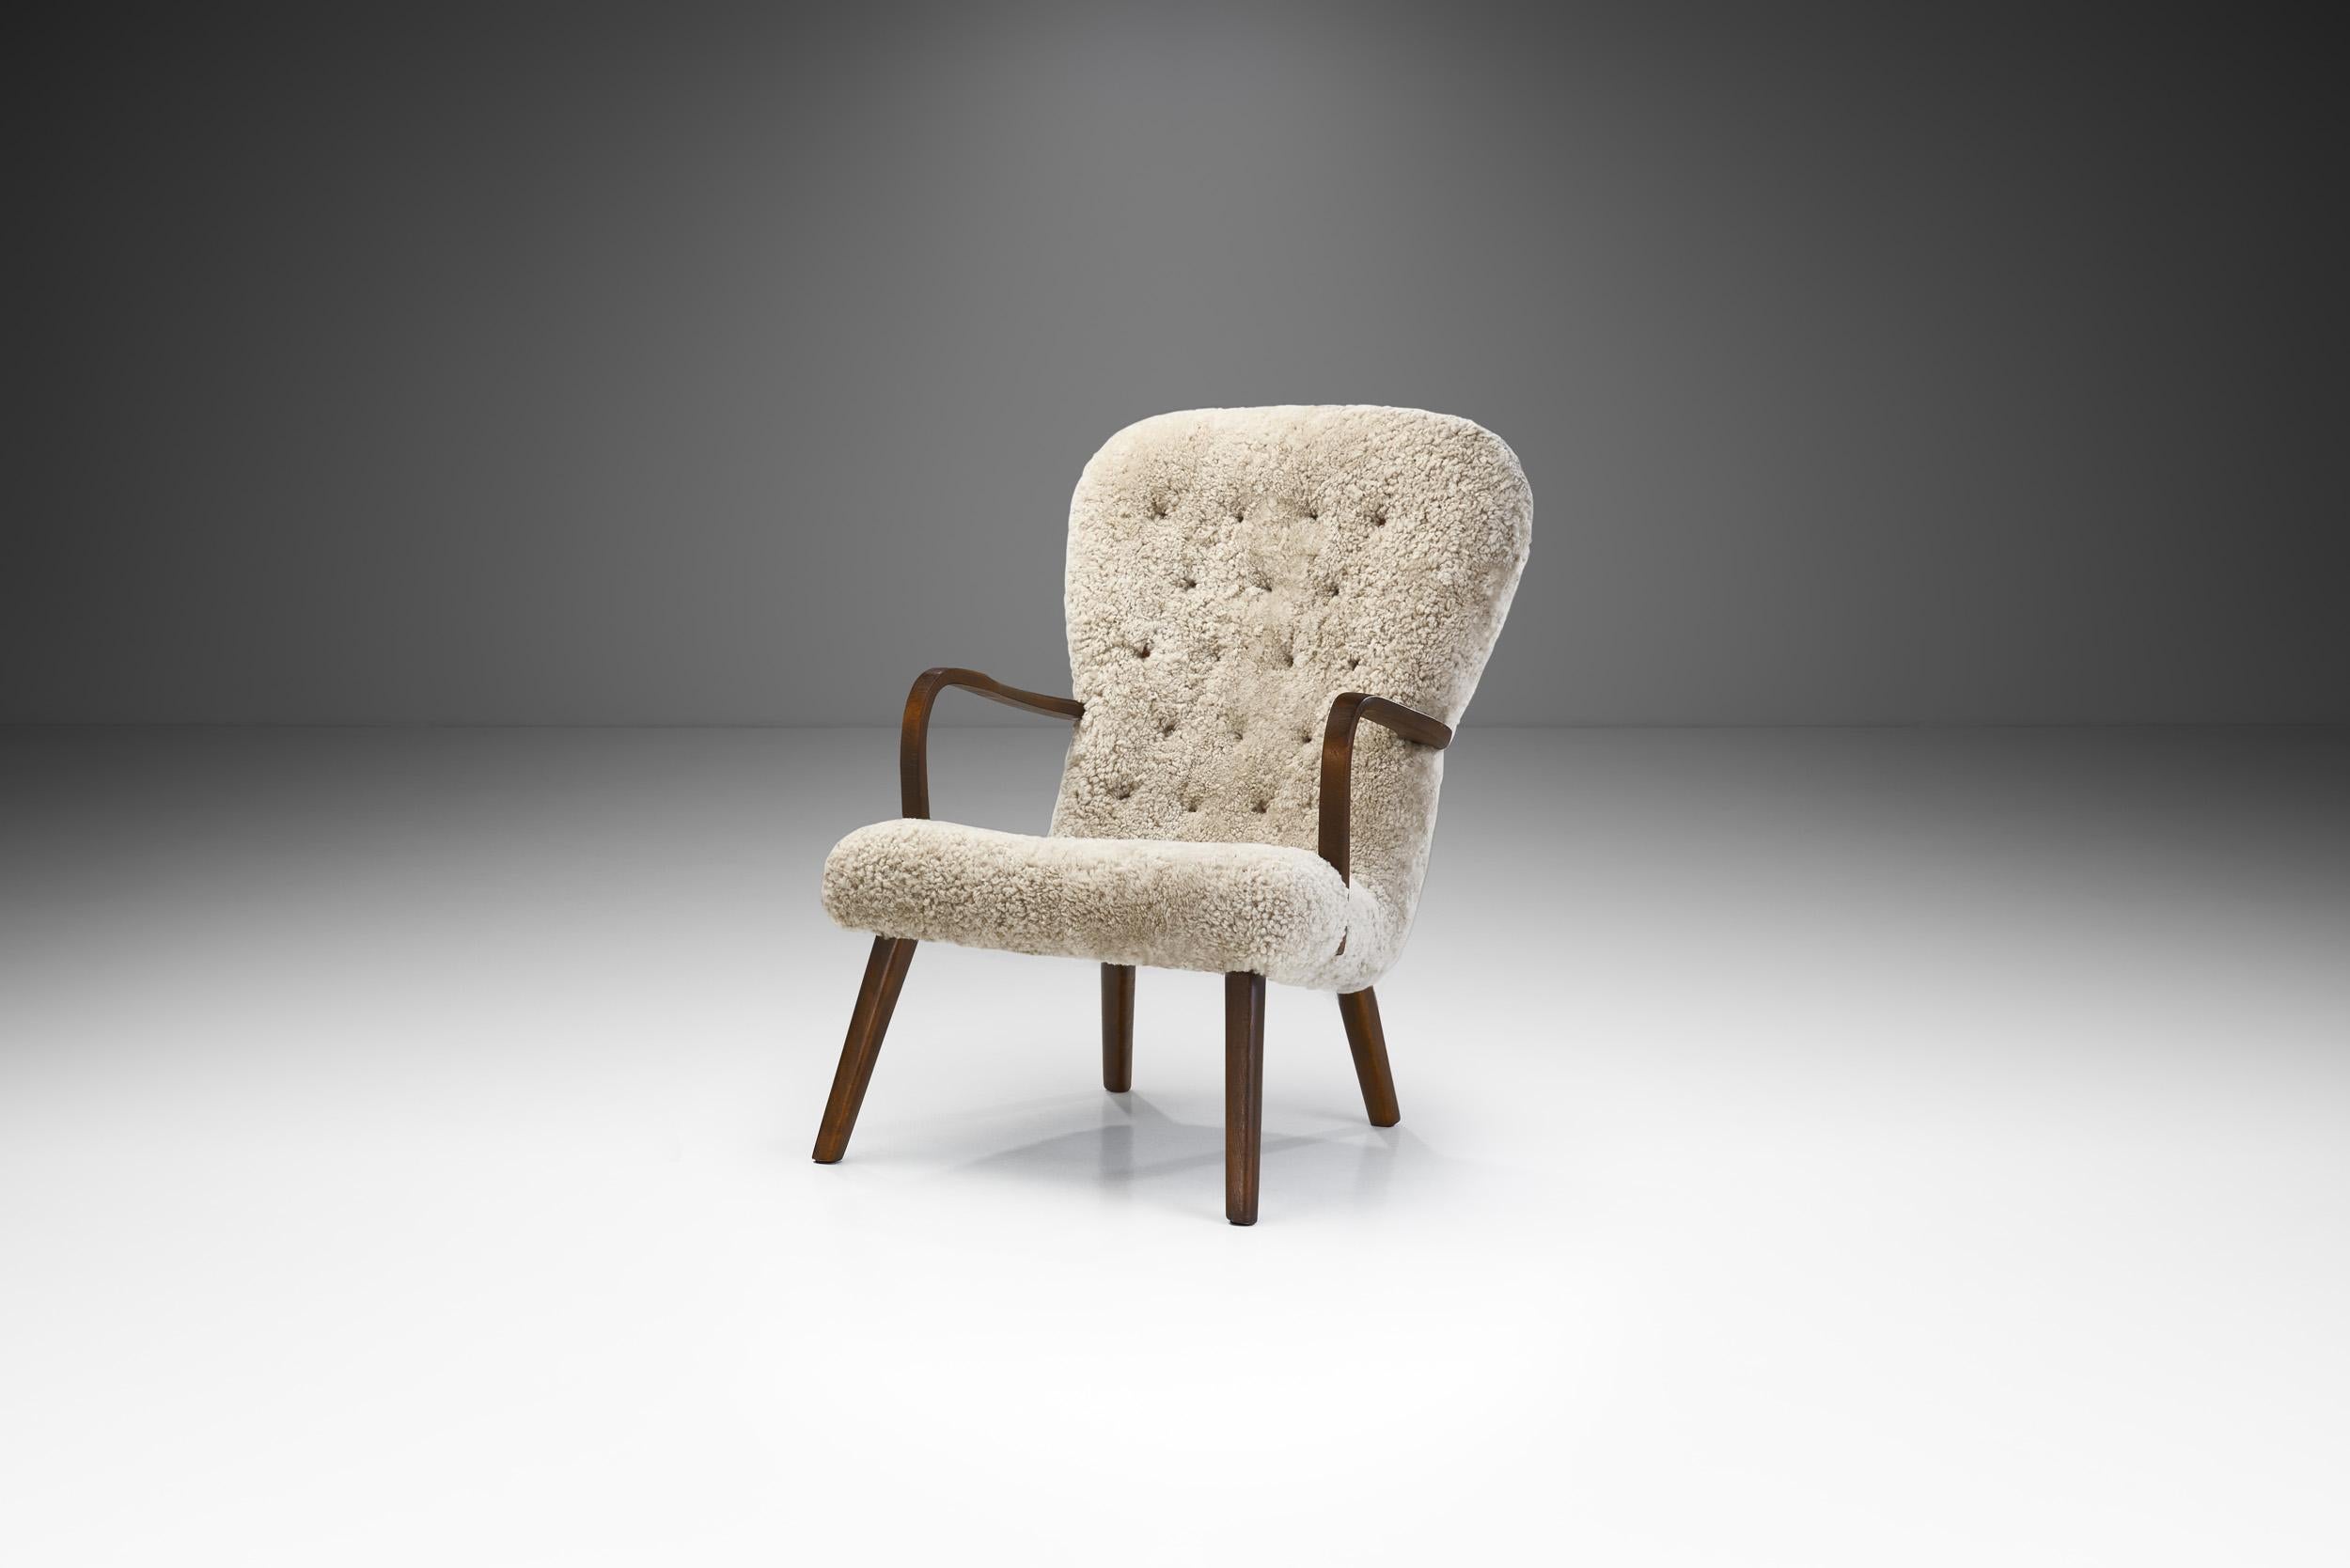 Ce fauteuil de style mid-century s'articule autour de matériaux de haute qualité, du confort et de la maîtrise des ébénistes danois. Le design danois est une combinaison remarquable d'un souci de confort et de matérialité associé à un désir de